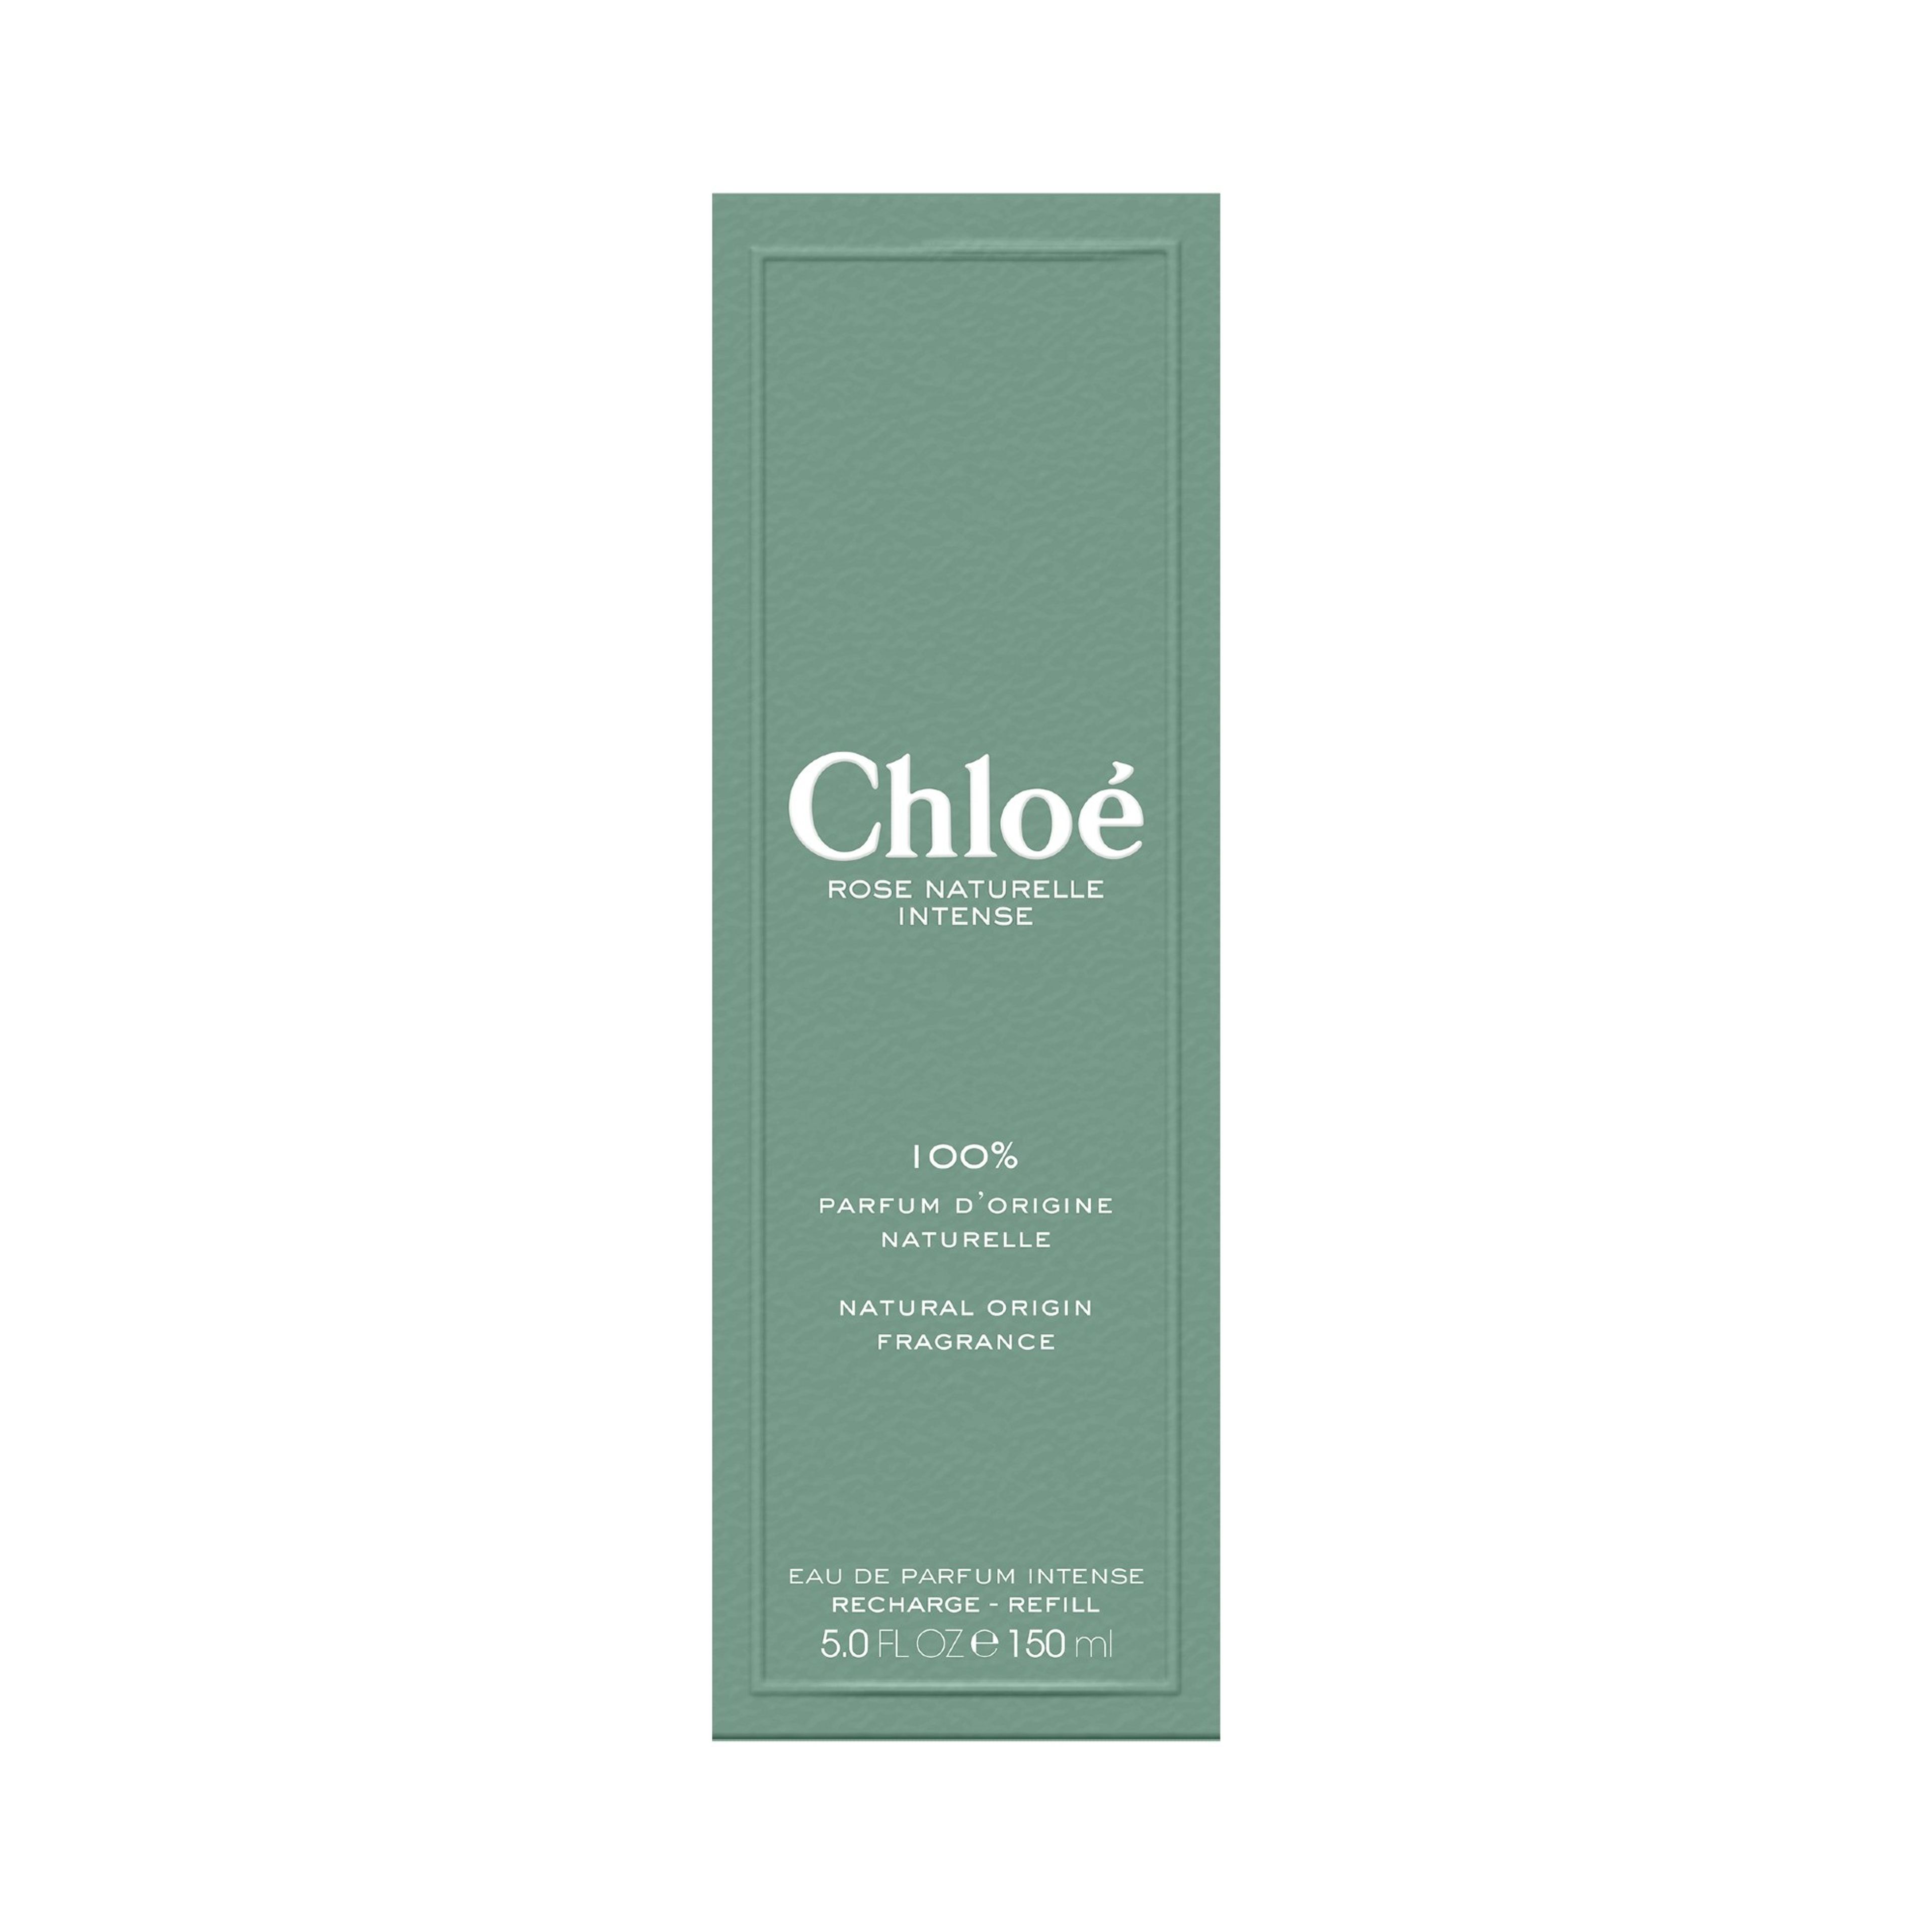 Chloé Chloé Eau De Parfum Intense Rose Naturelle Intense - Ricarica 4